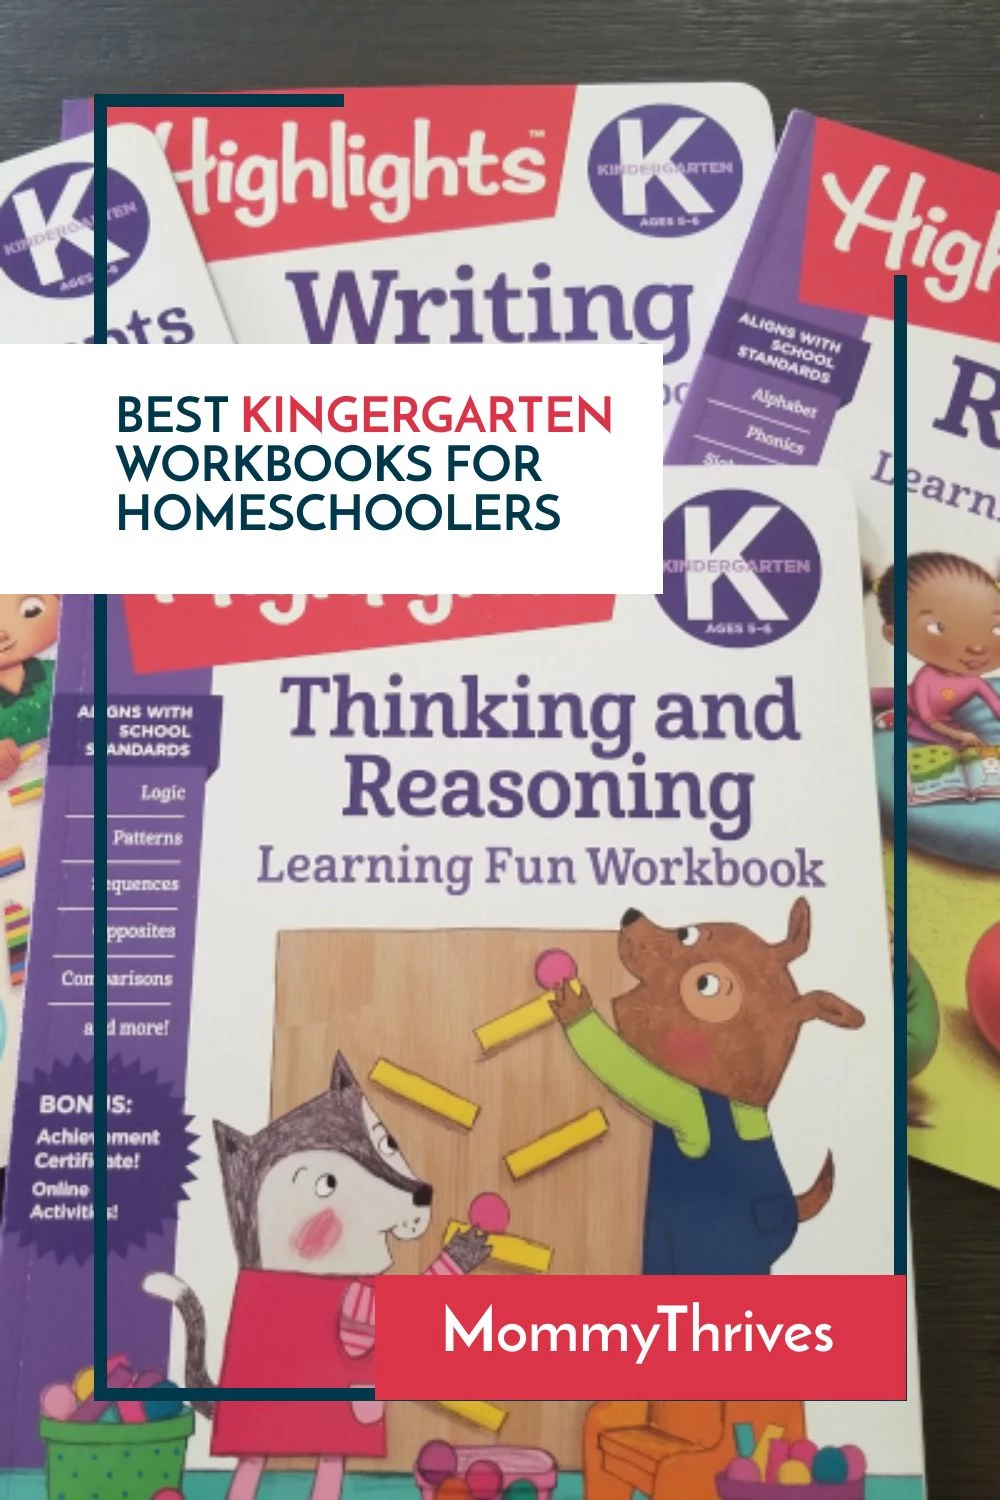 Best Workbooks For Kindergartners - Homeschooling Tips With Workbooks - Kindergarten Supplemental Workbooks For Homeschoolers